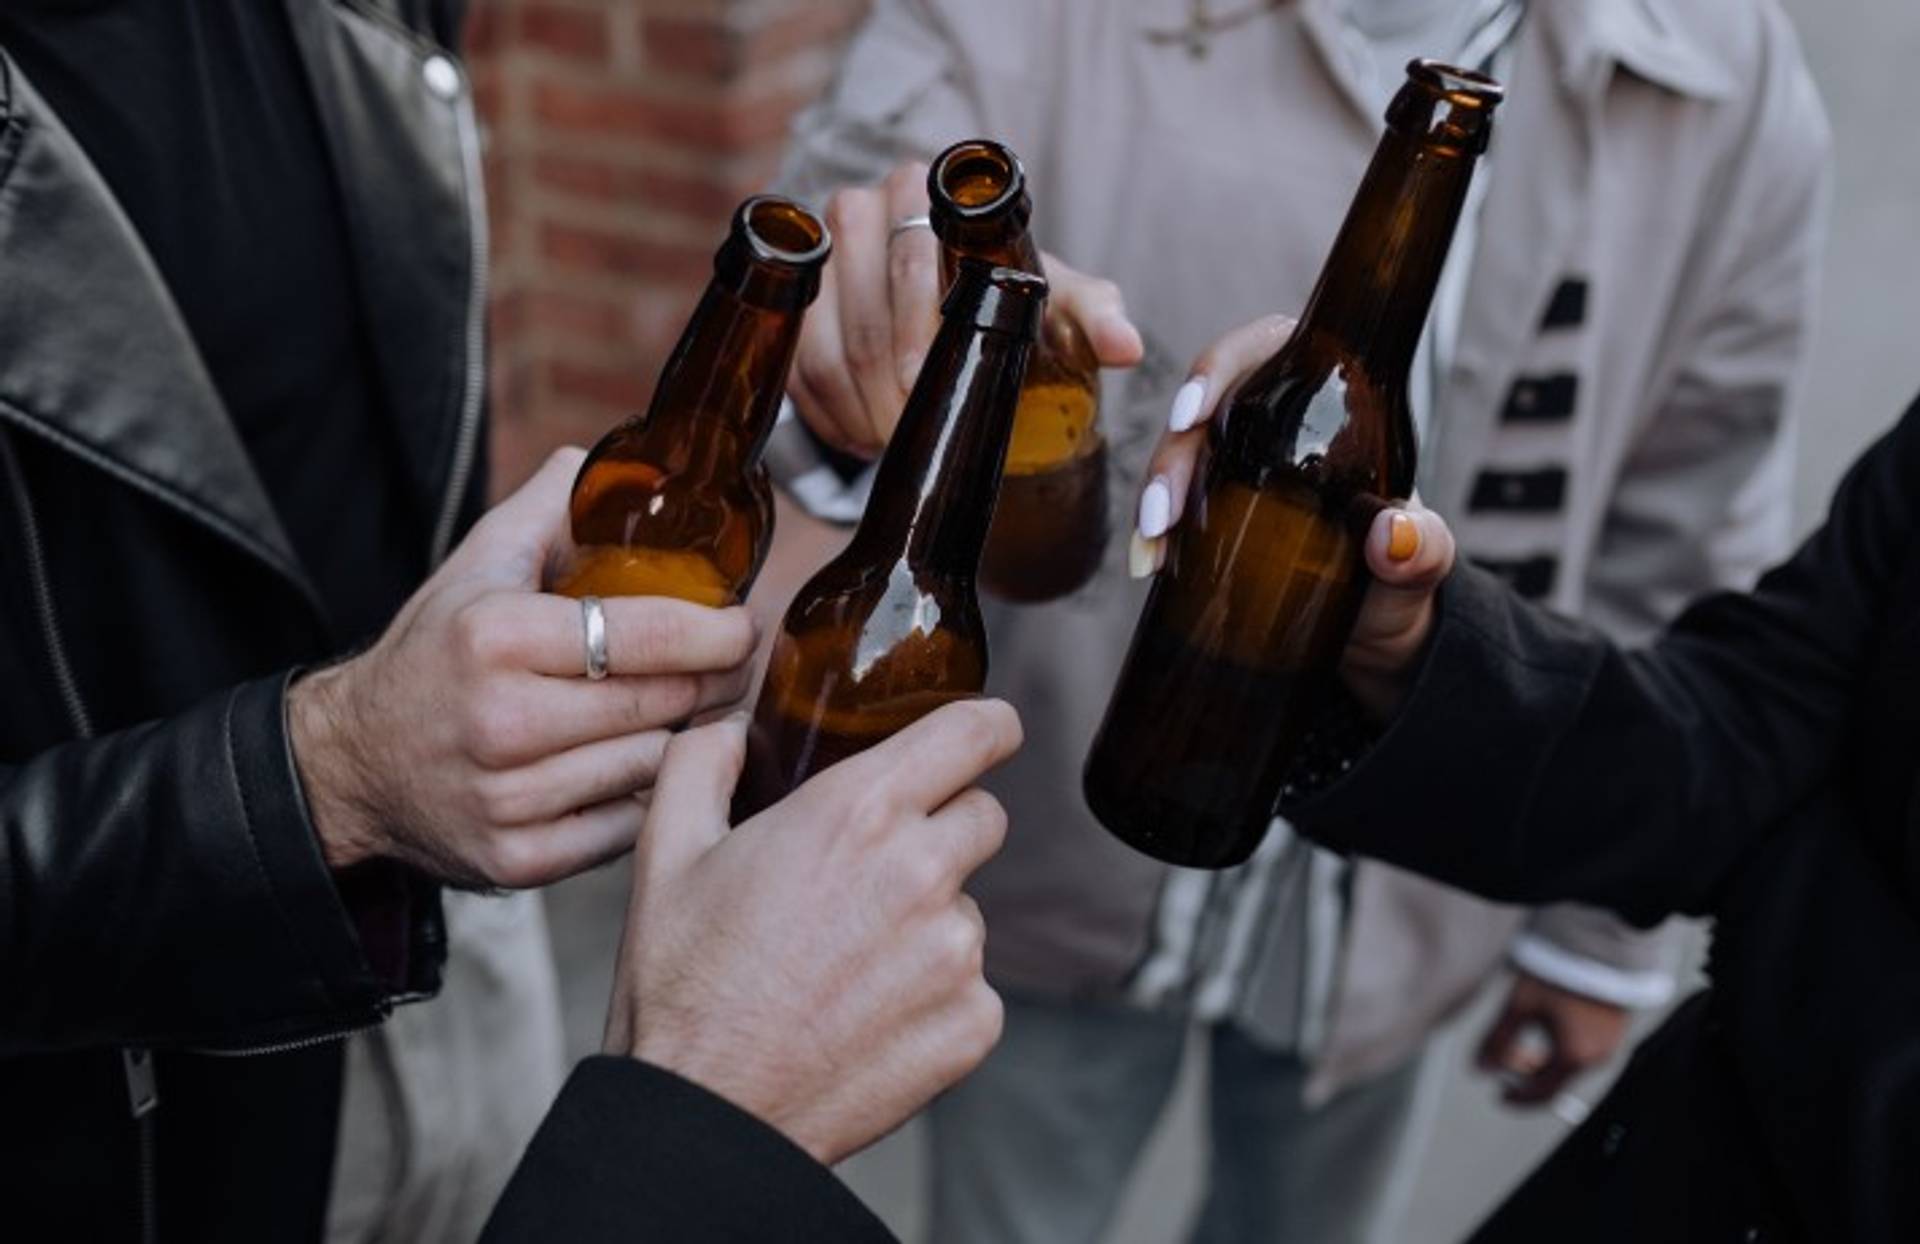 Beerscans brings beer lovers closer to breweries